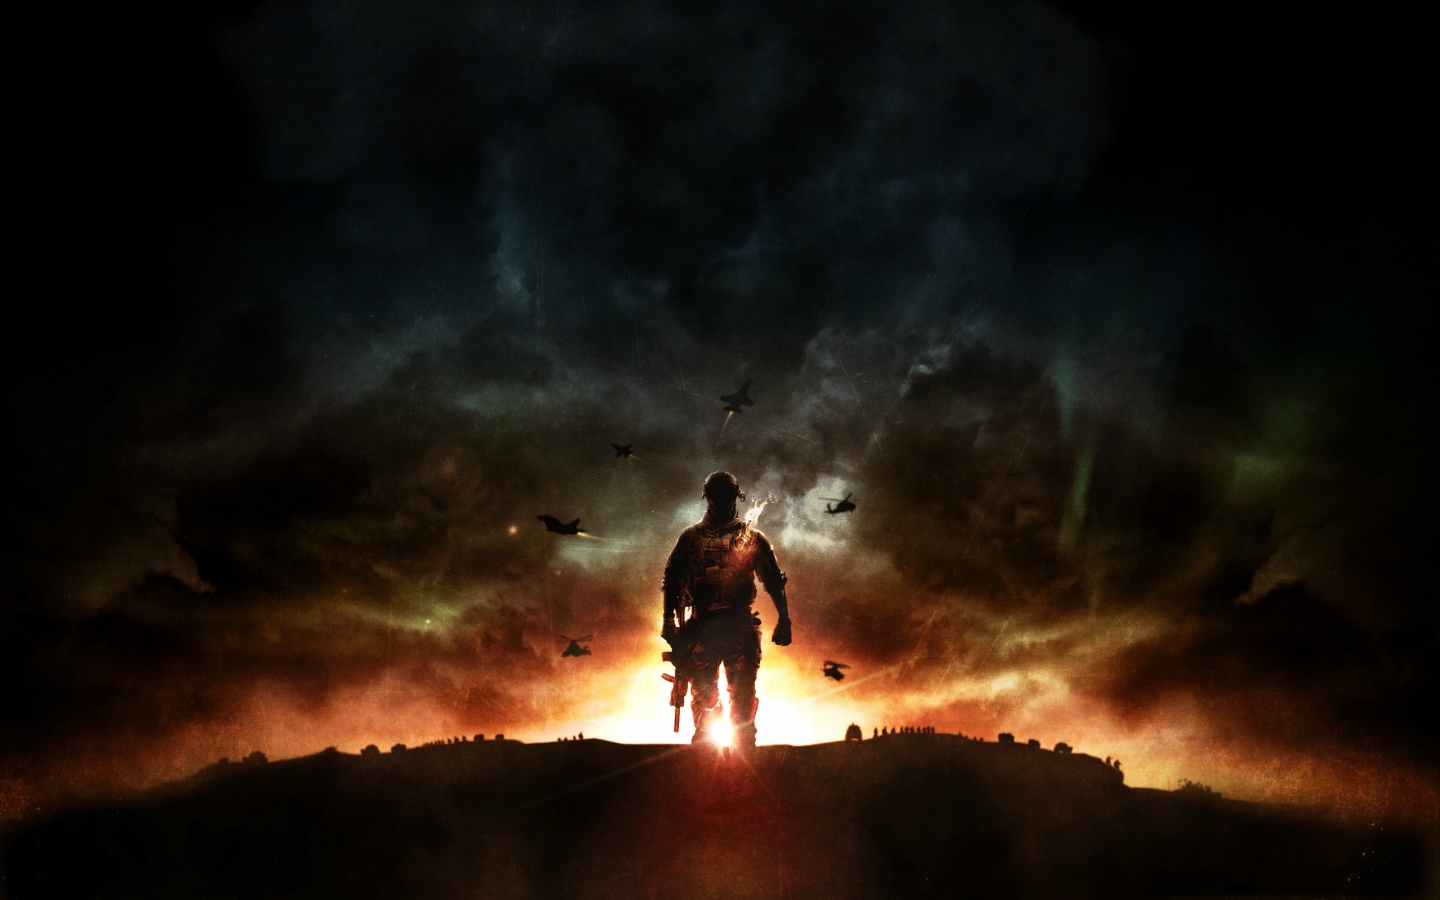 Battlefield 4 Sunset War for 1440 x 900 widescreen resolution